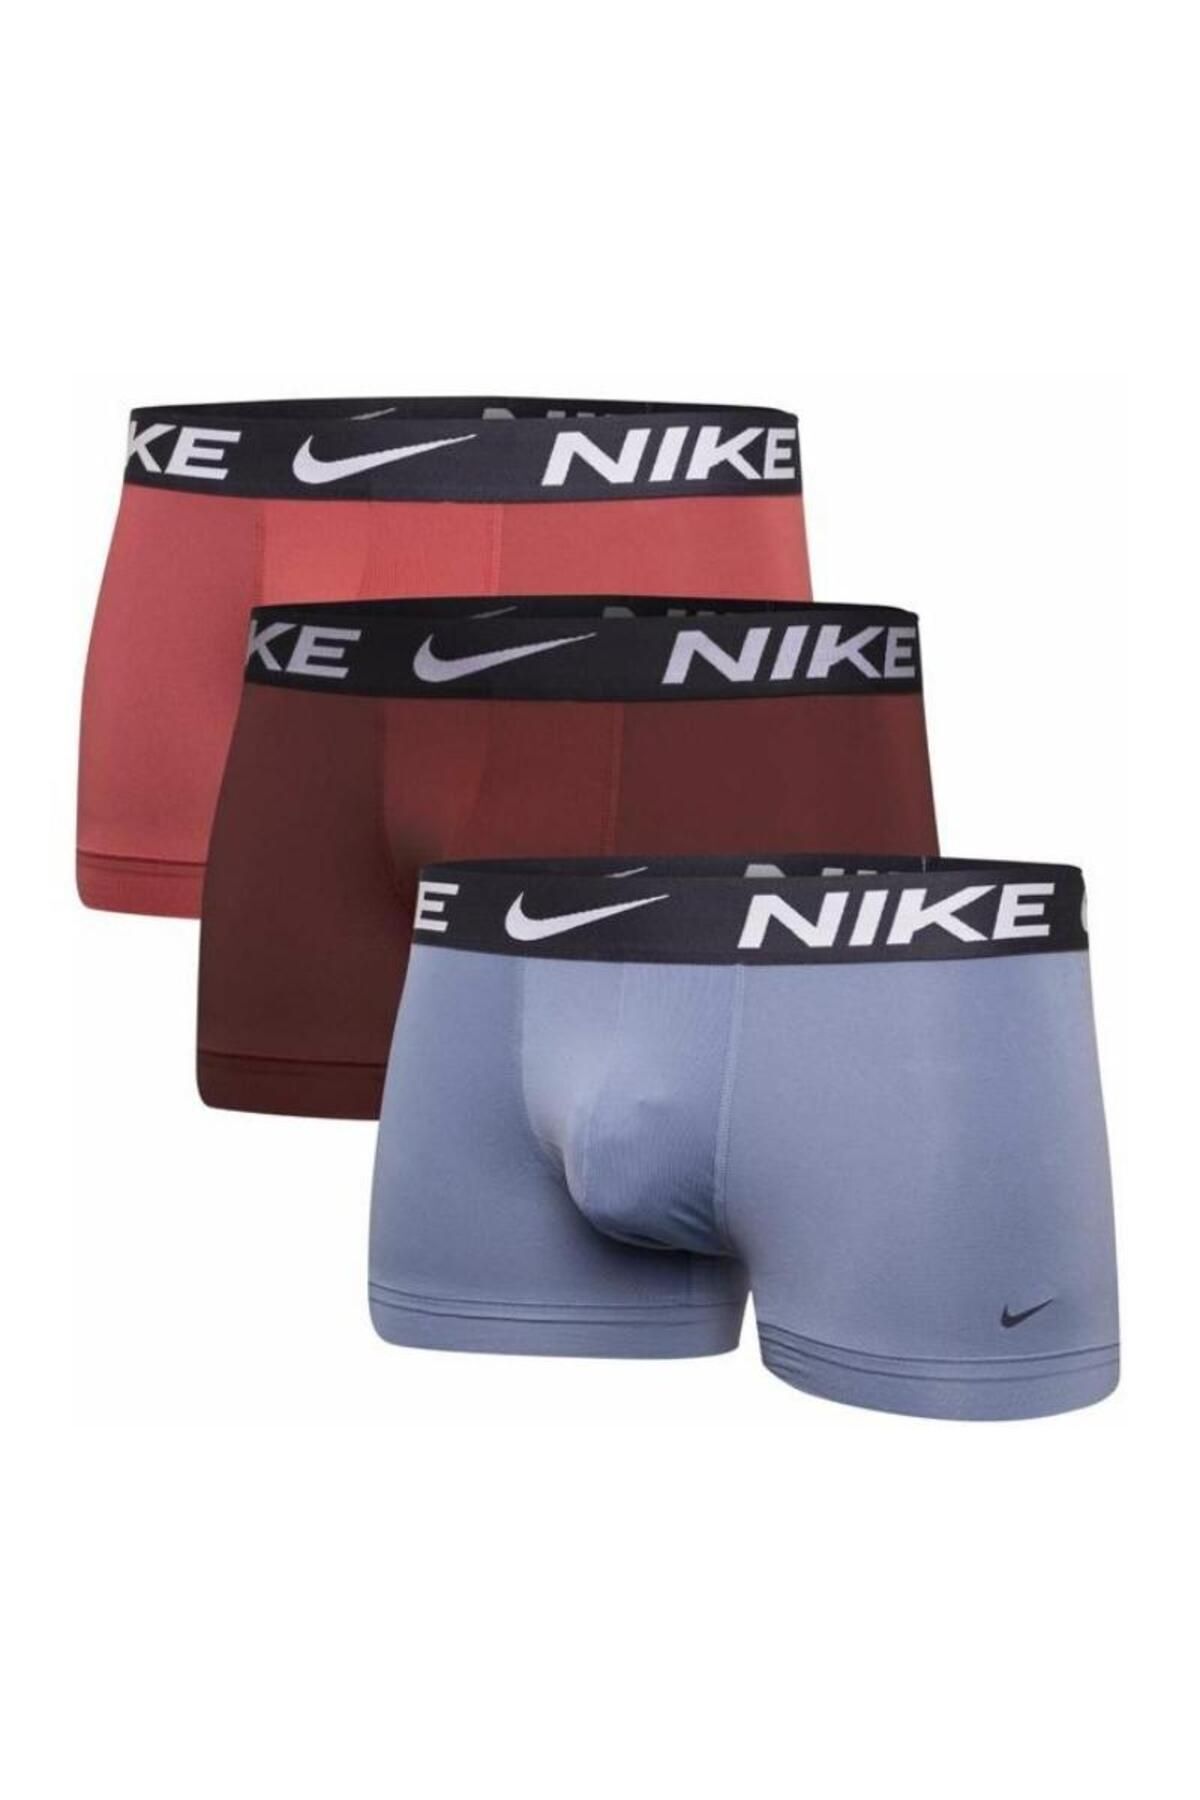 Nike Erkek Renkli Boxer 0000ke115653e-renkli